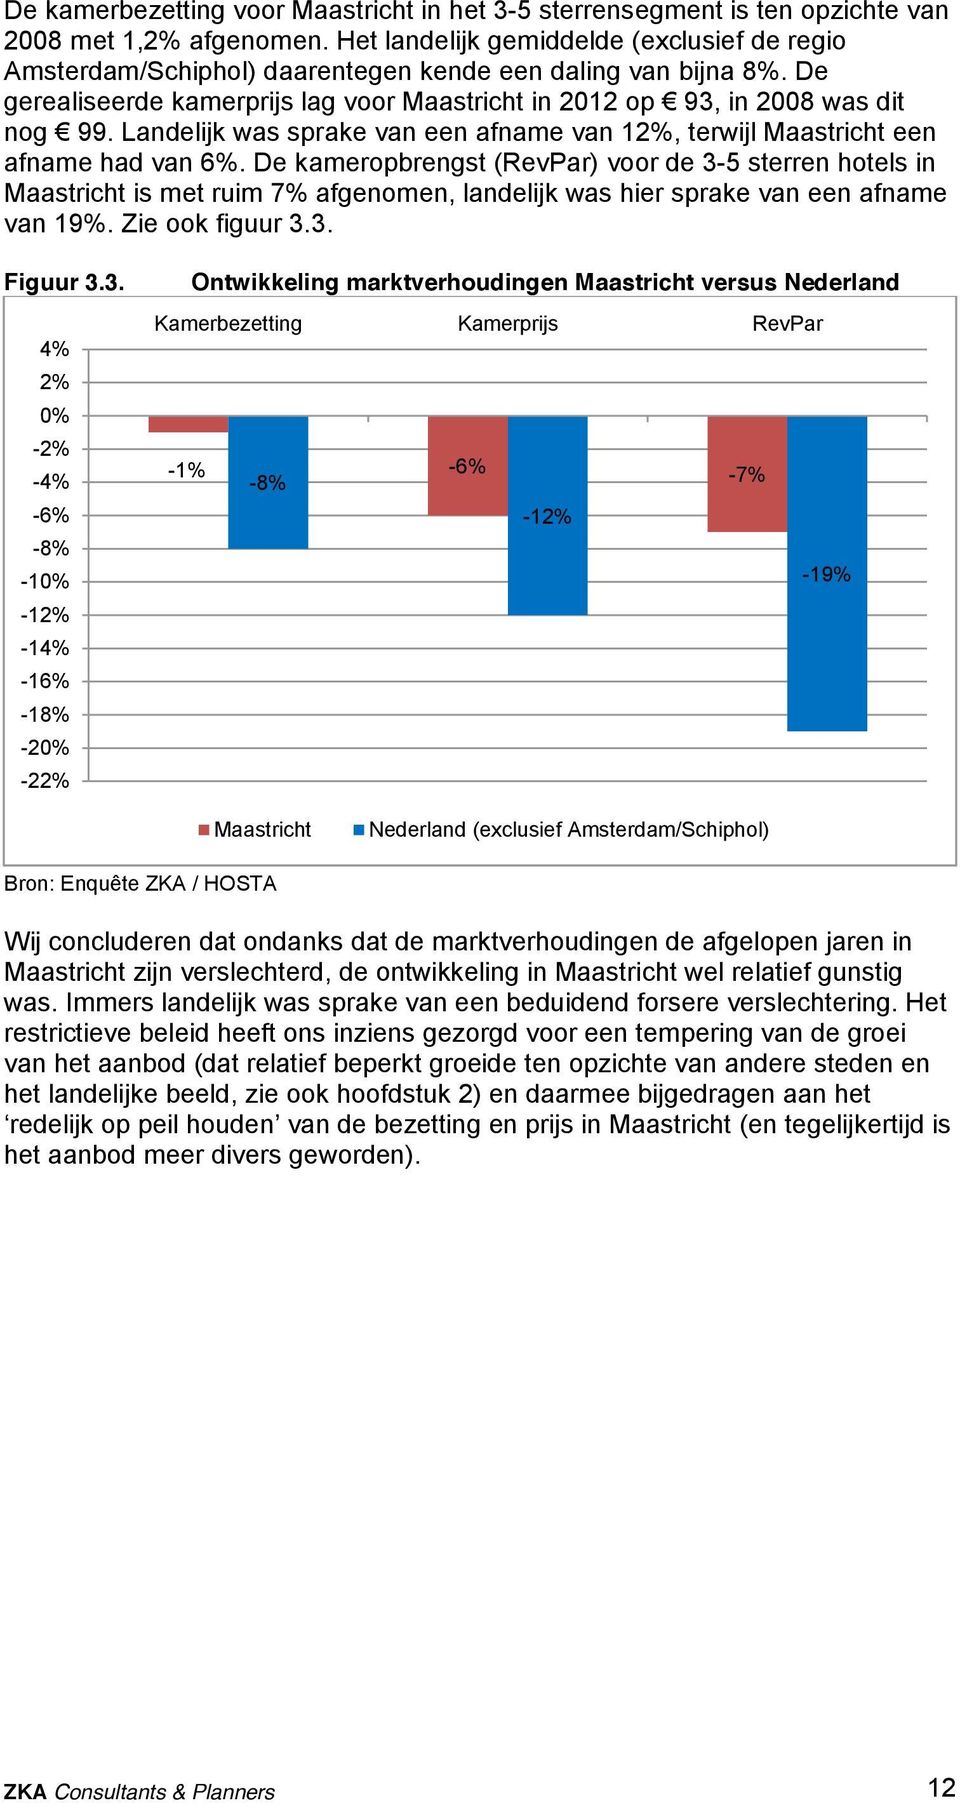 Landelijk was sprake van een afname van 12%, terwijl Maastricht een afname had van 6%.